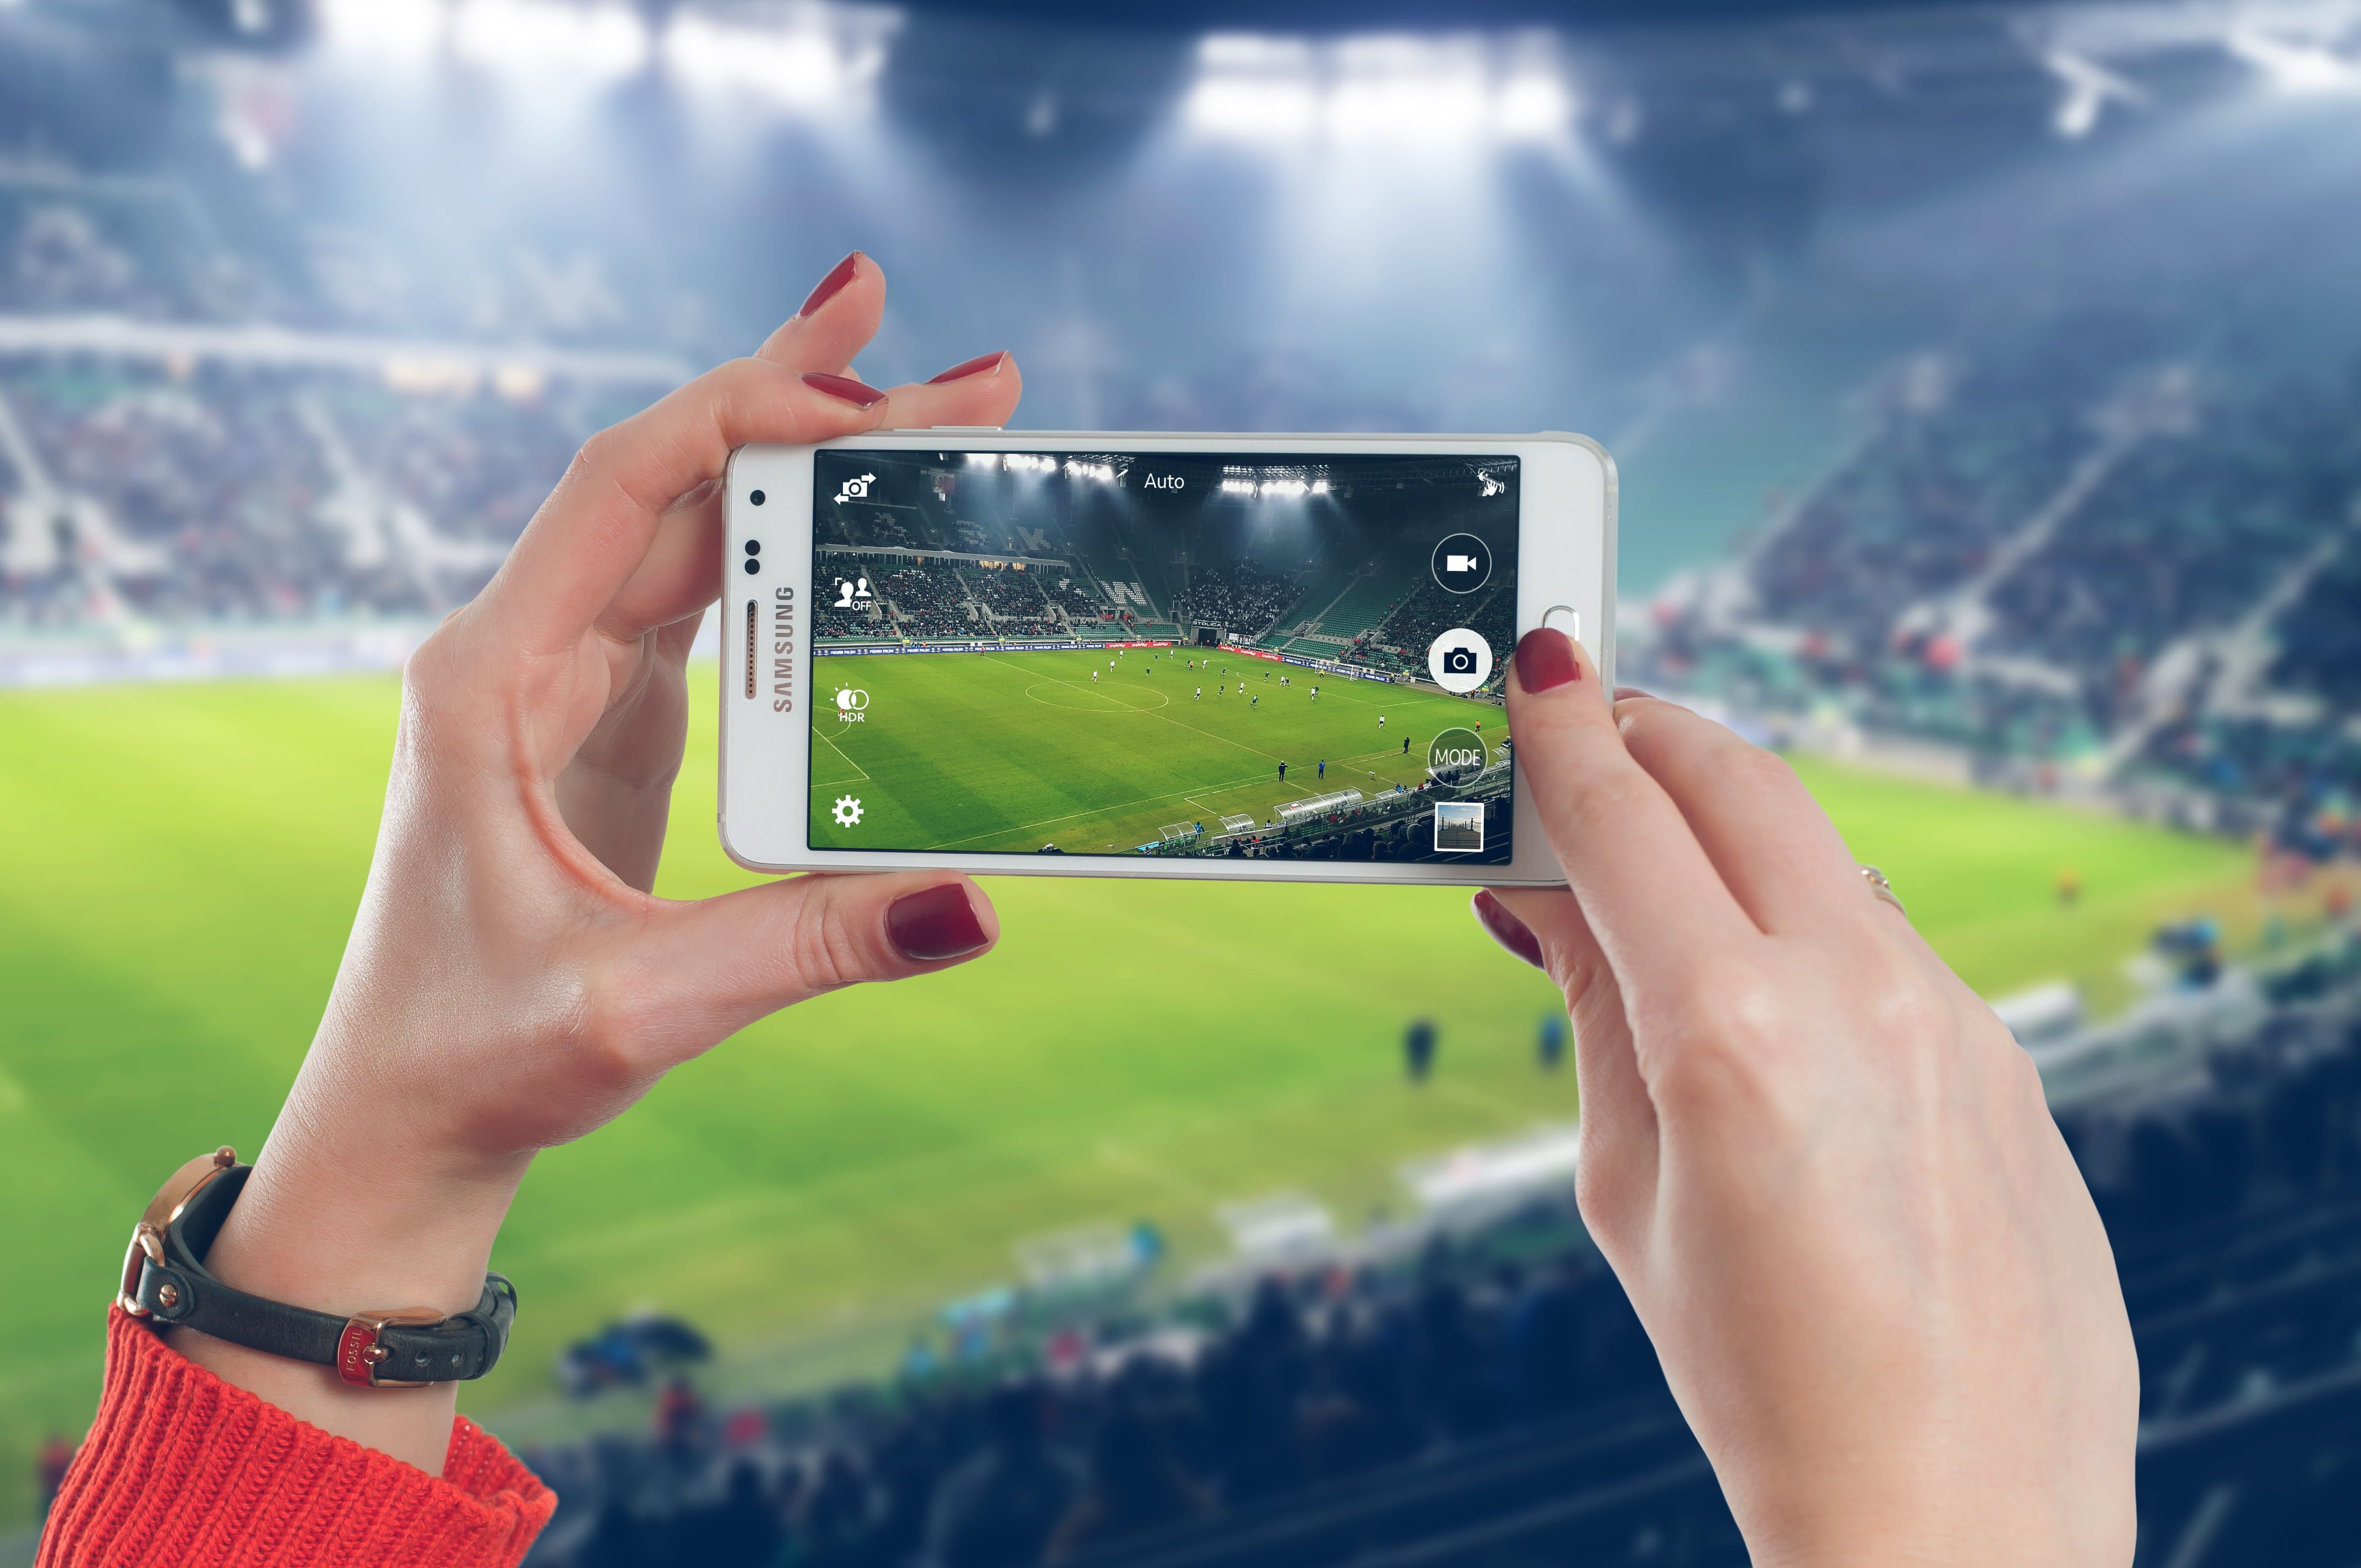 Mòbil cambra|càmera foto vídeo futbol / PxFuel